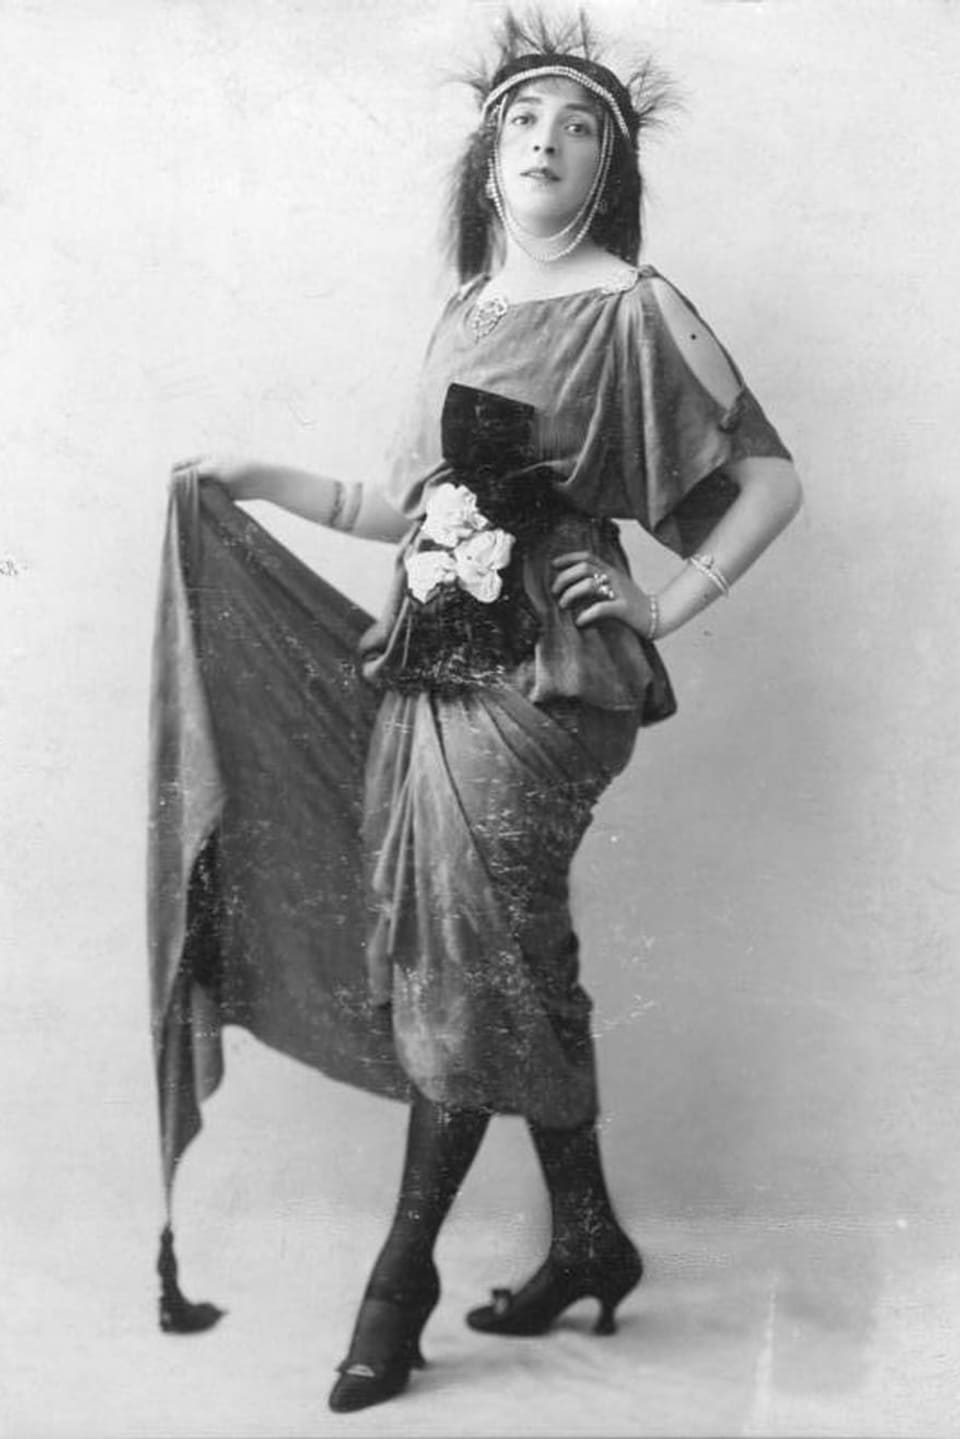 Frau in Kostüm mit wallendem Rock, Stiefeletten und Blumenbouquet um den Bauch gebunden. 